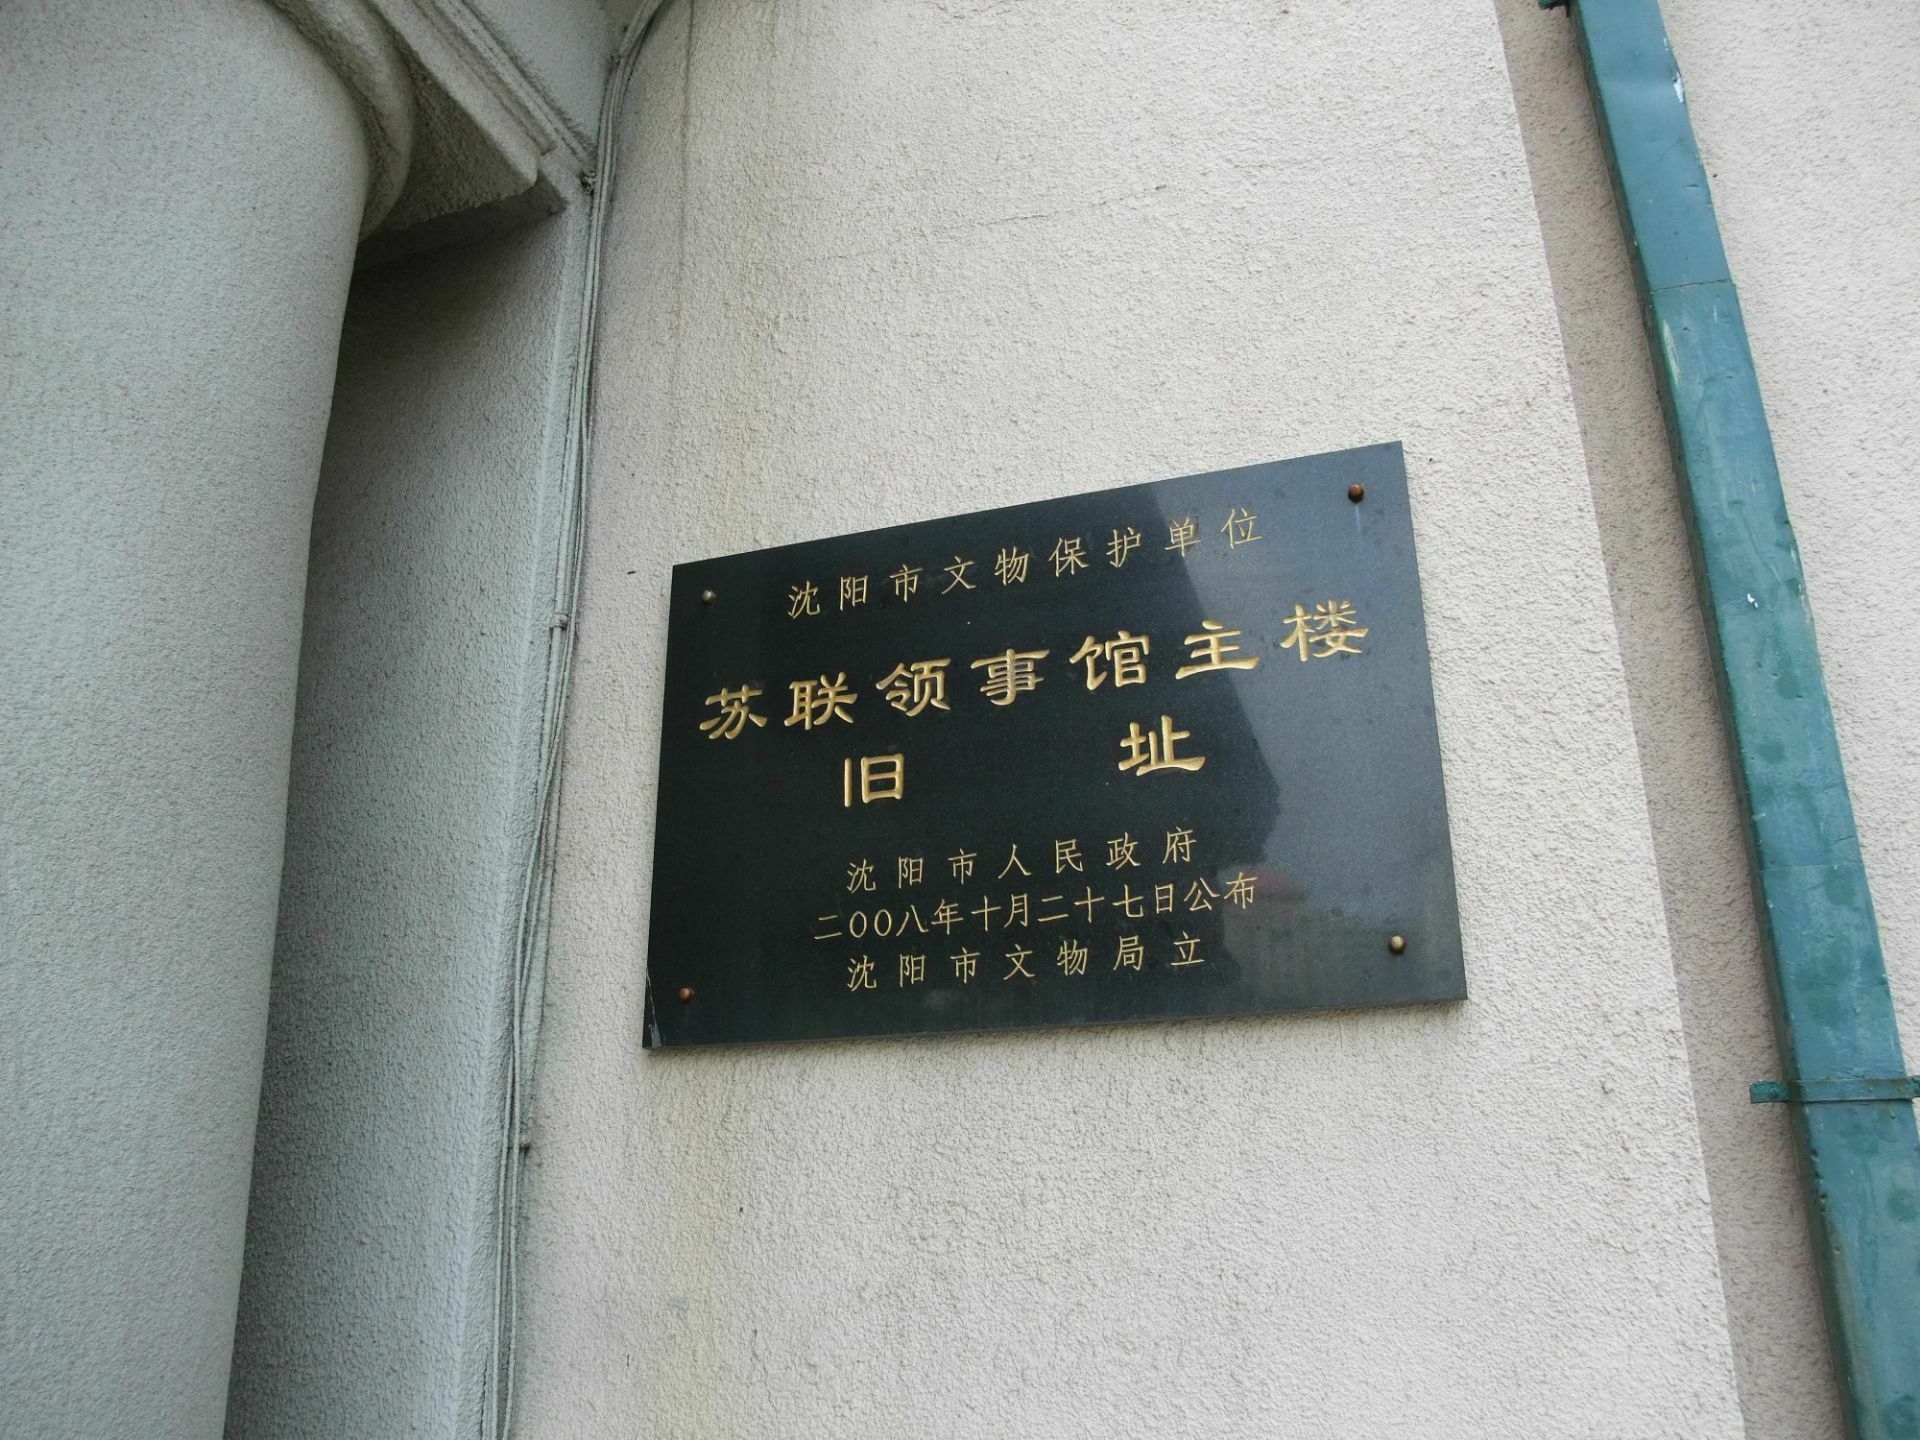 沈阳苏联领事馆主楼旧址位于沈阳市沈河区北三经街9号,始建于1906年